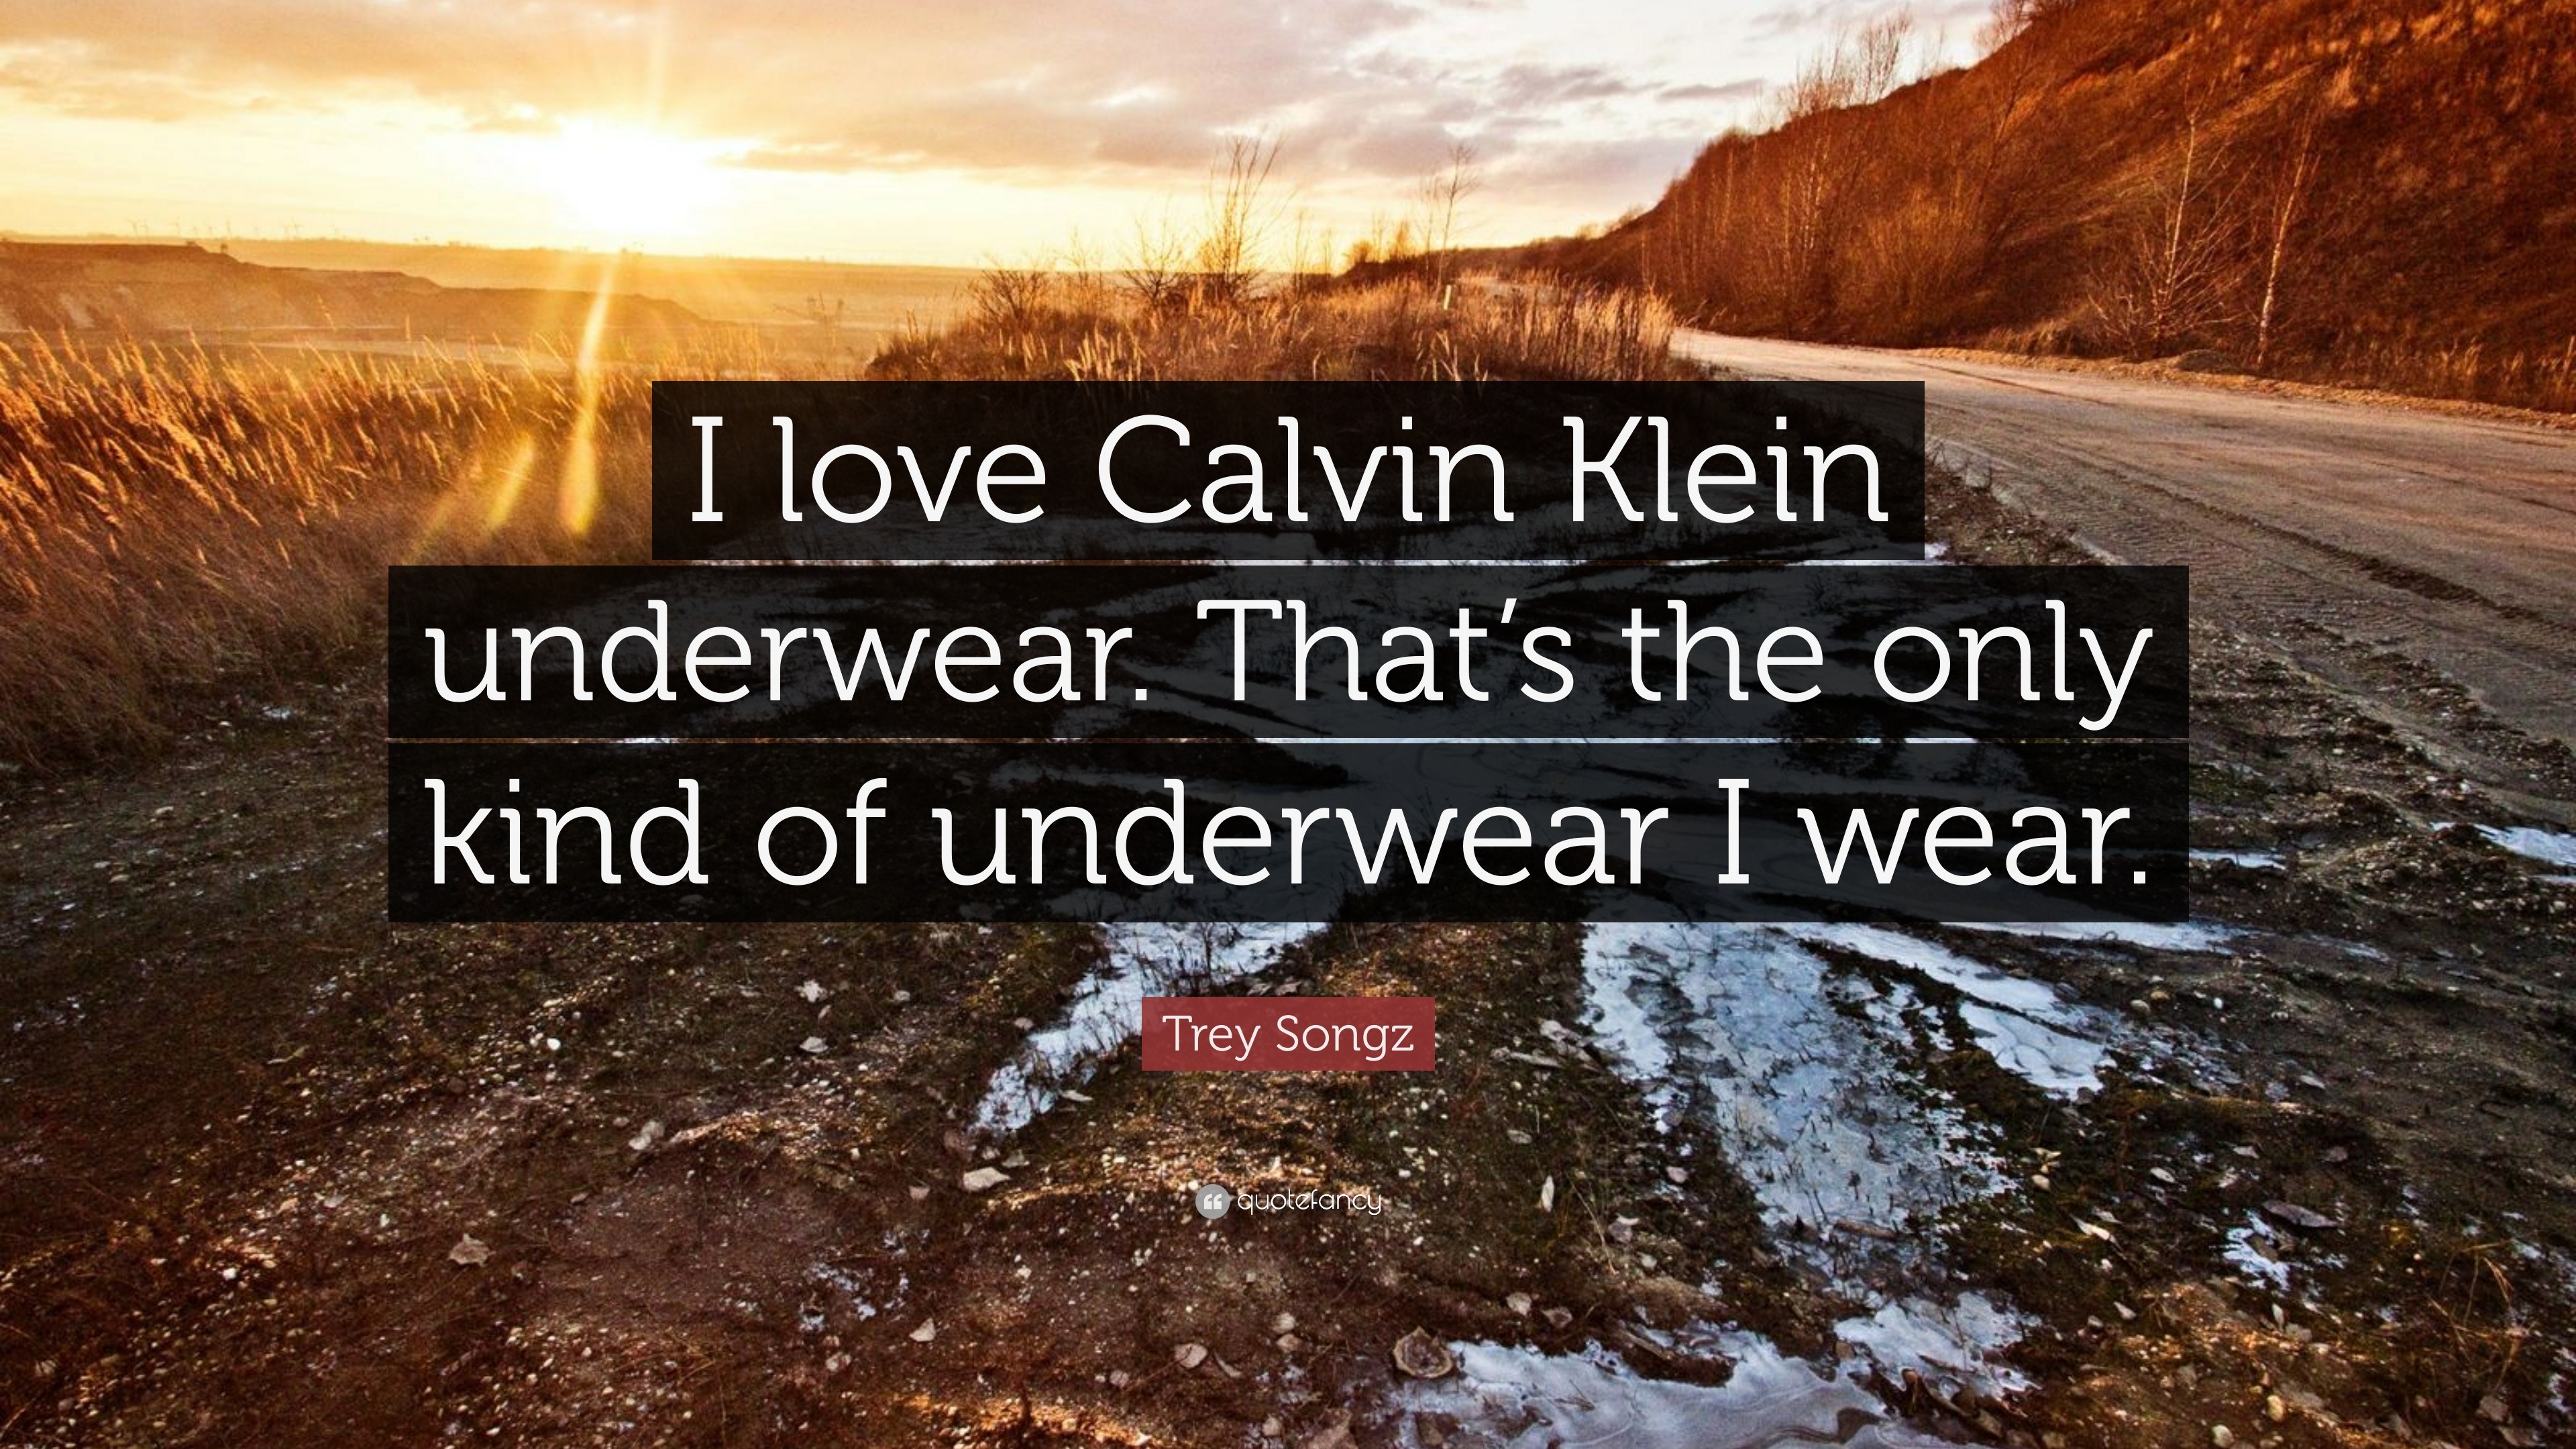 Trey Songz Quote: “I love Calvin Klein underwear. That's the only kind of  underwear I wear.”